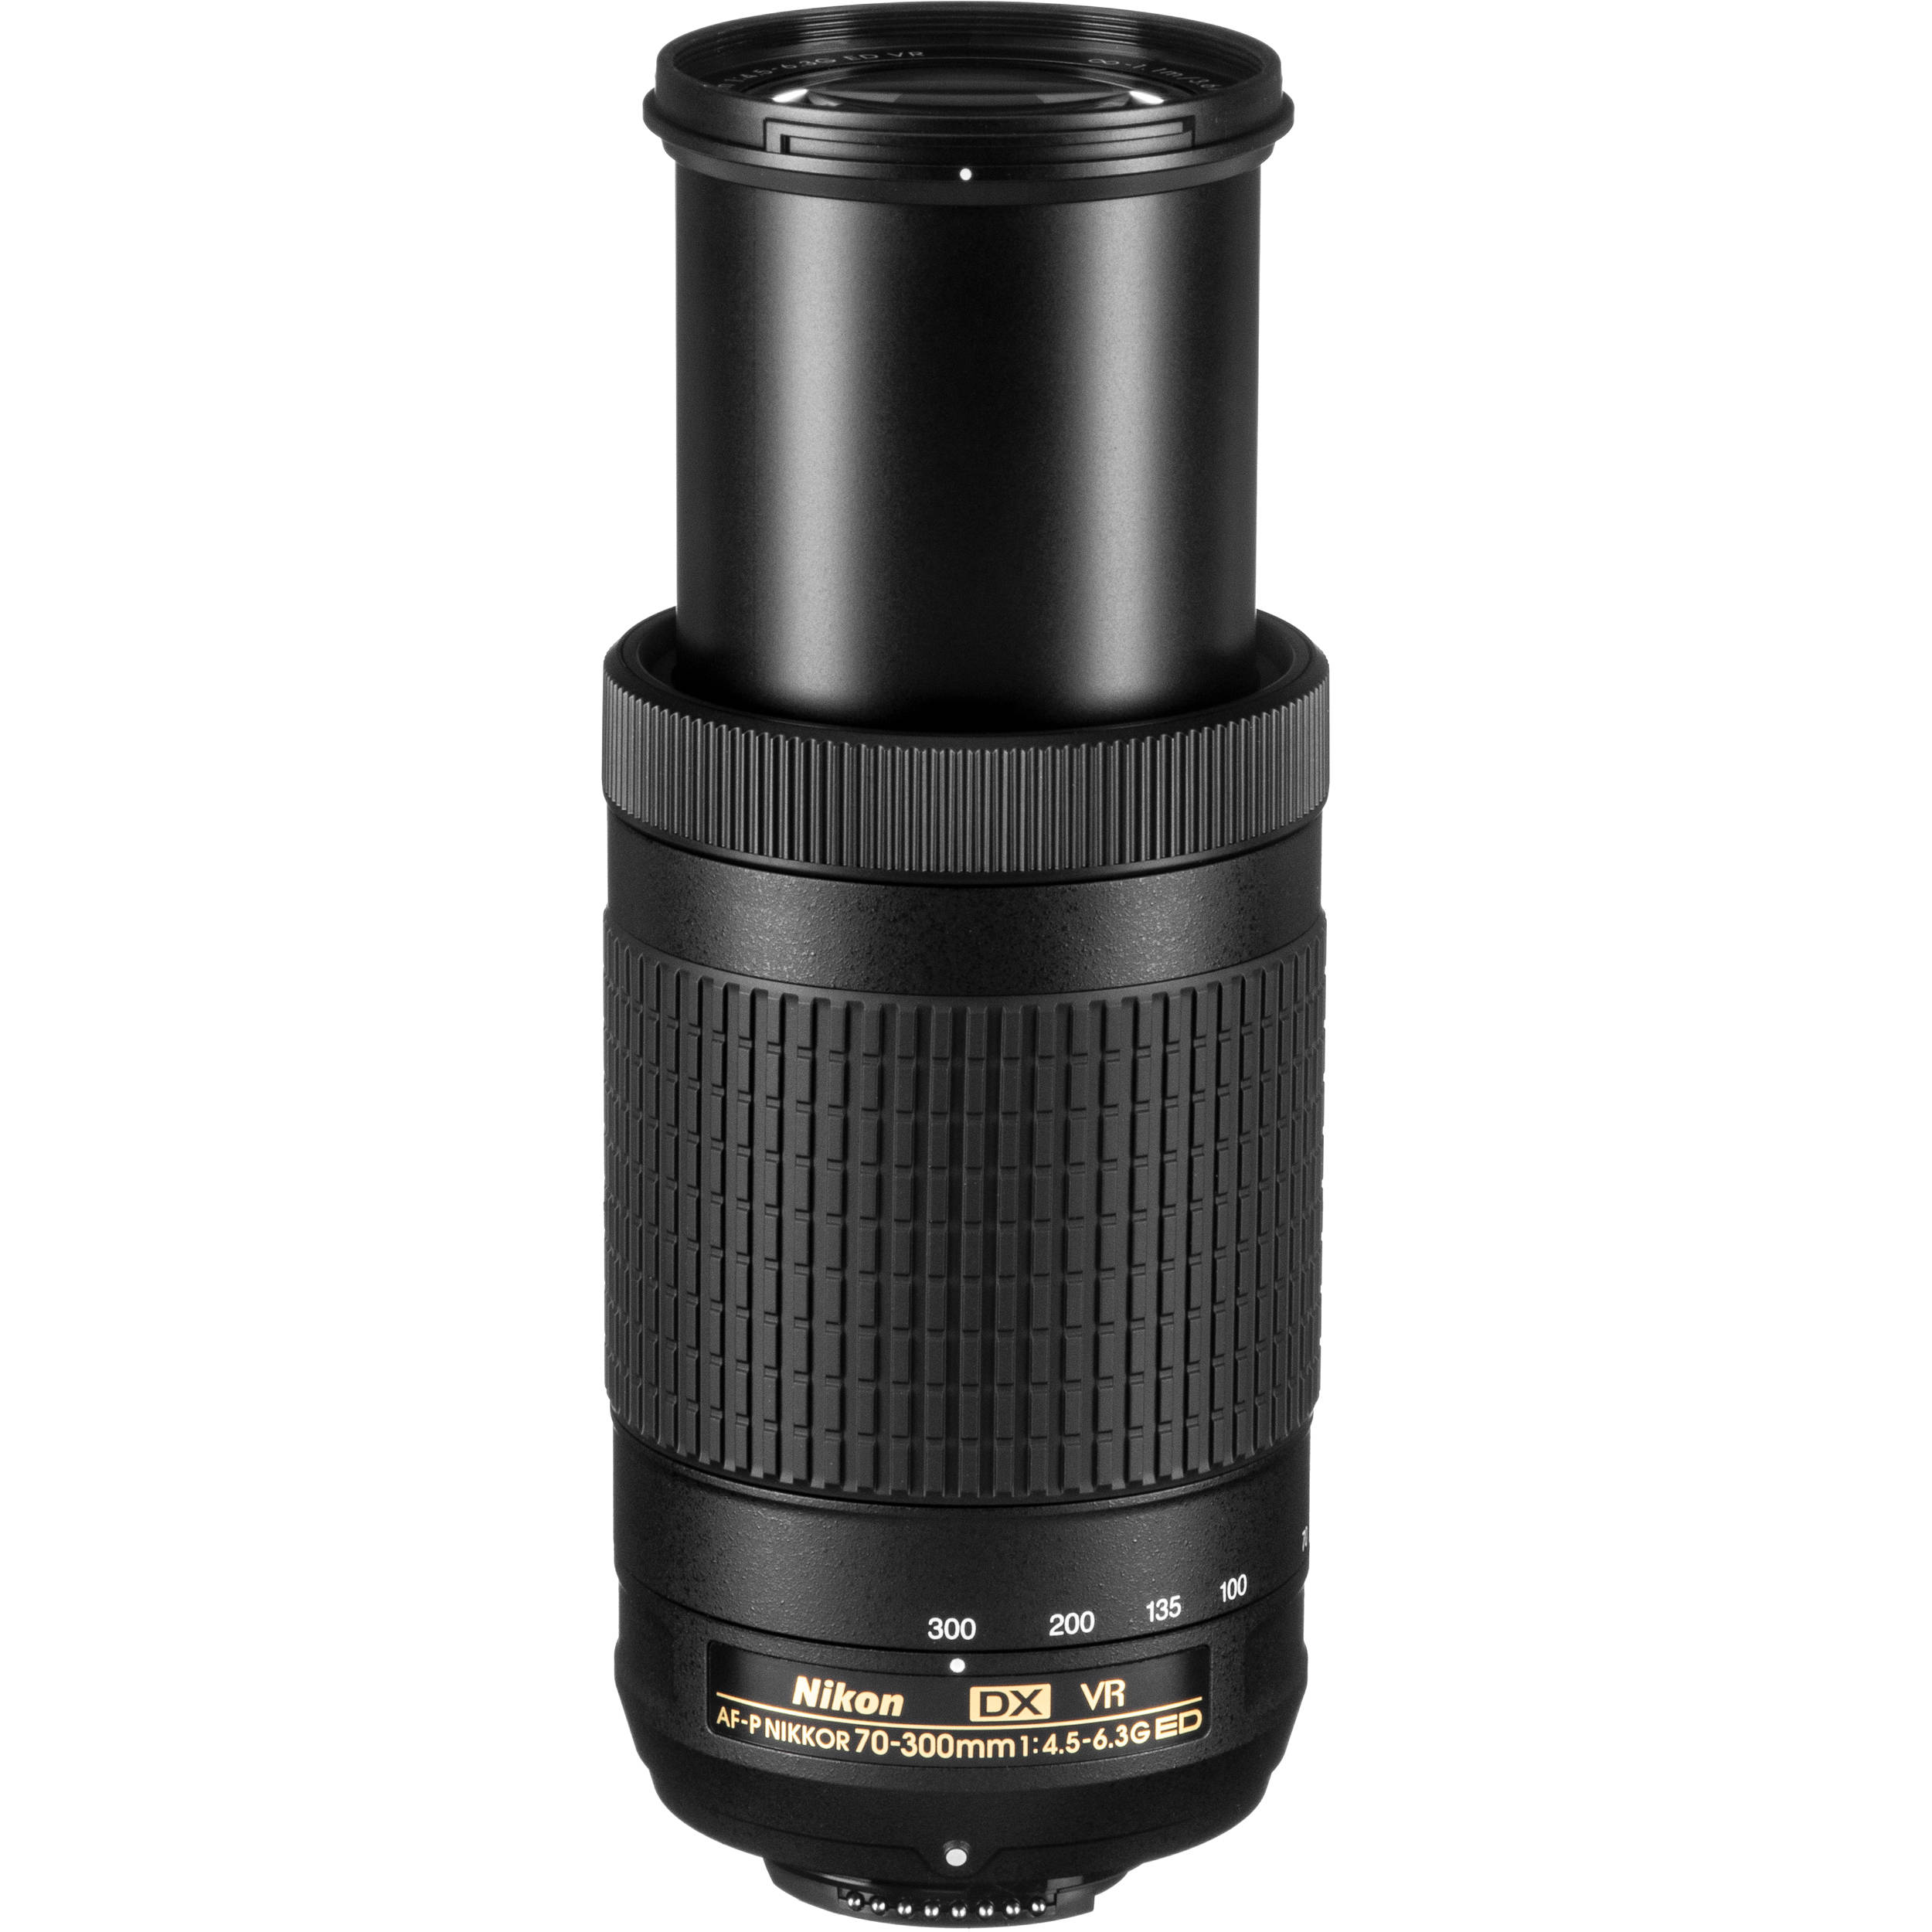 Nikon 望遠ズームレンズ AF-P DX NIKKOR 70-300mm f/4.5-6.3G ED VR